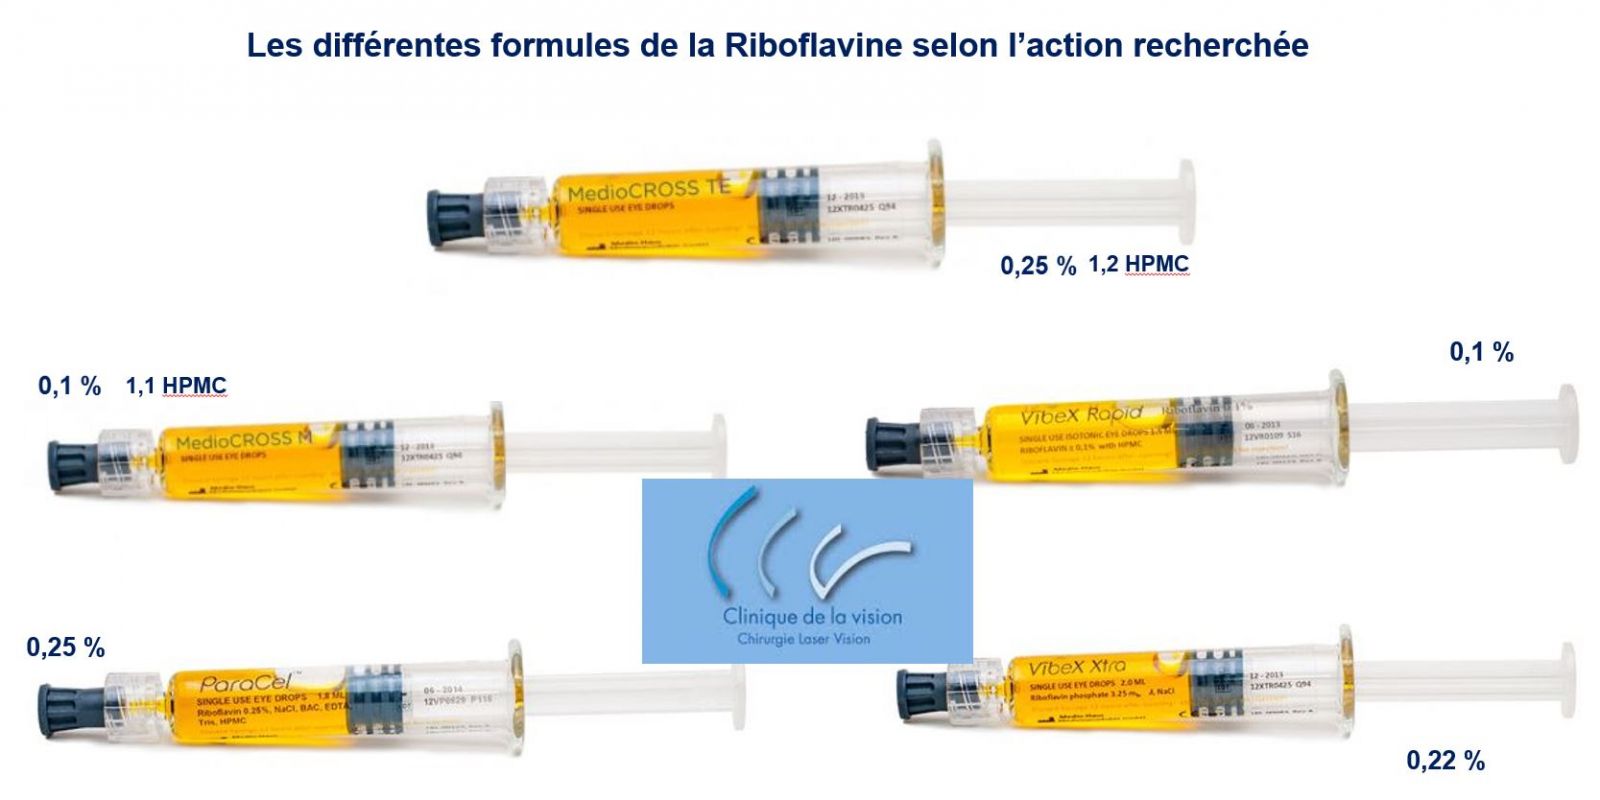 Les différentes formulaire de la Riboflavine selon l'action recherchée